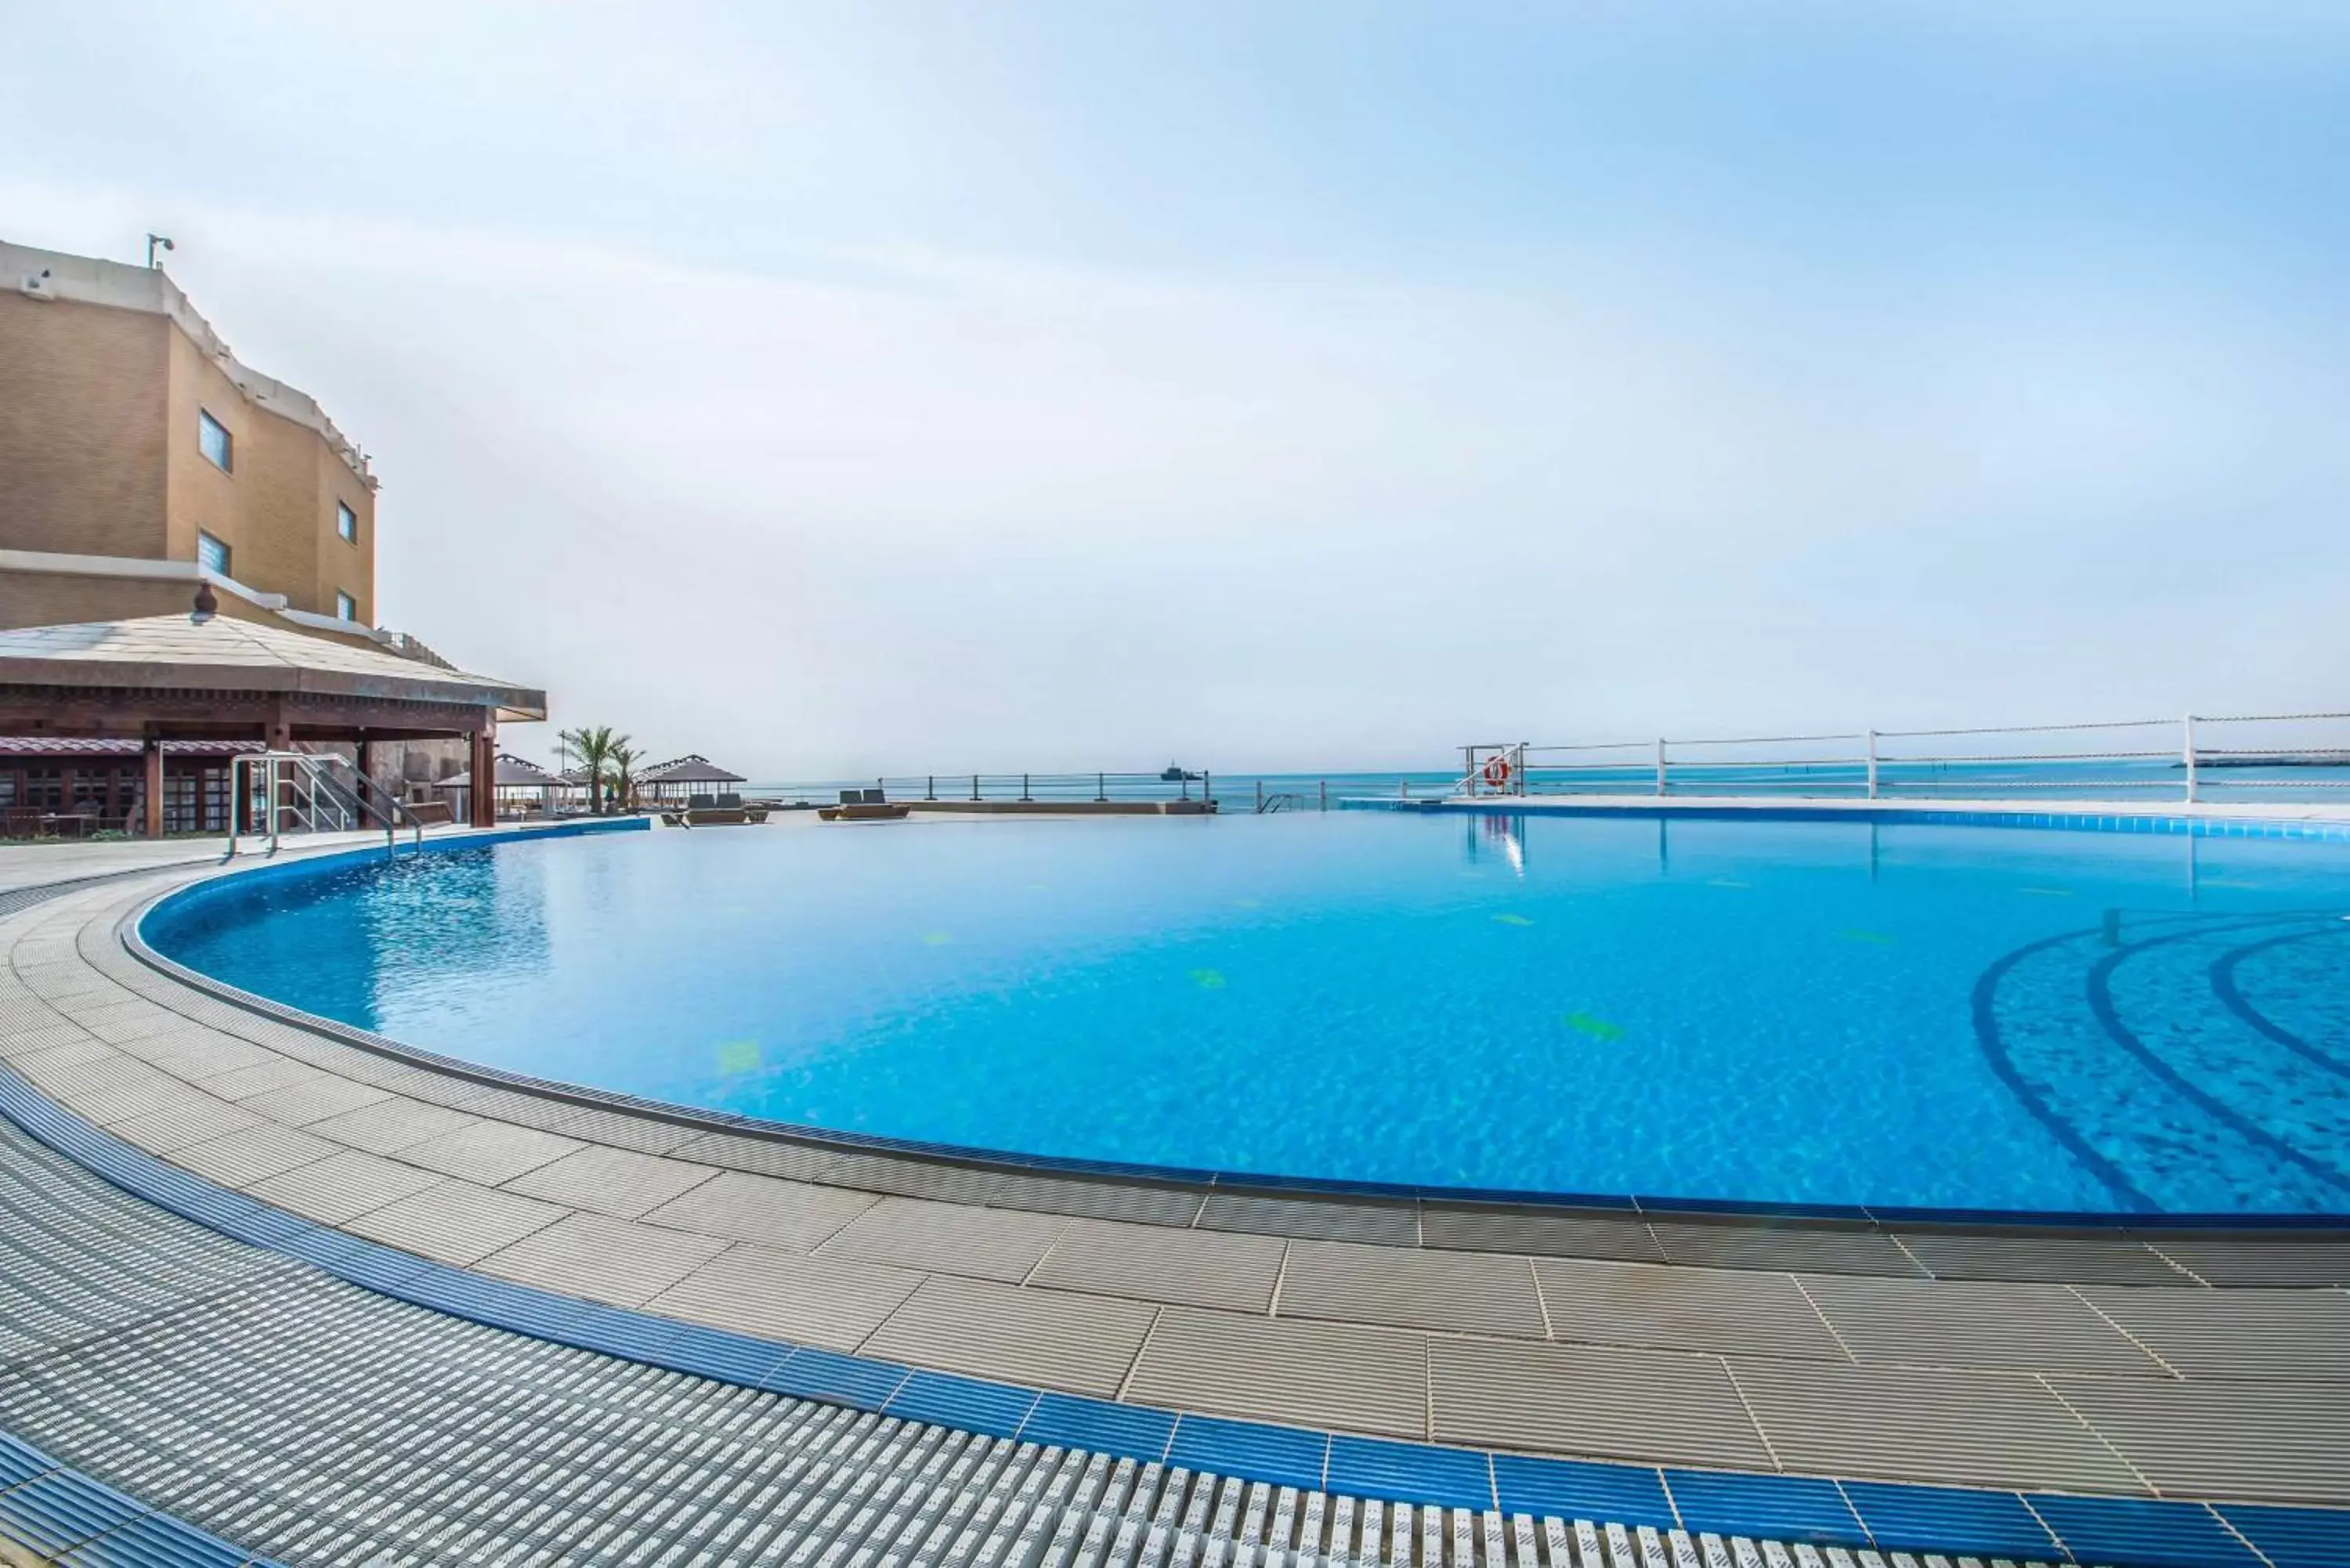 Activities, Swimming Pool in Radisson Blu Hotel, Kuwait